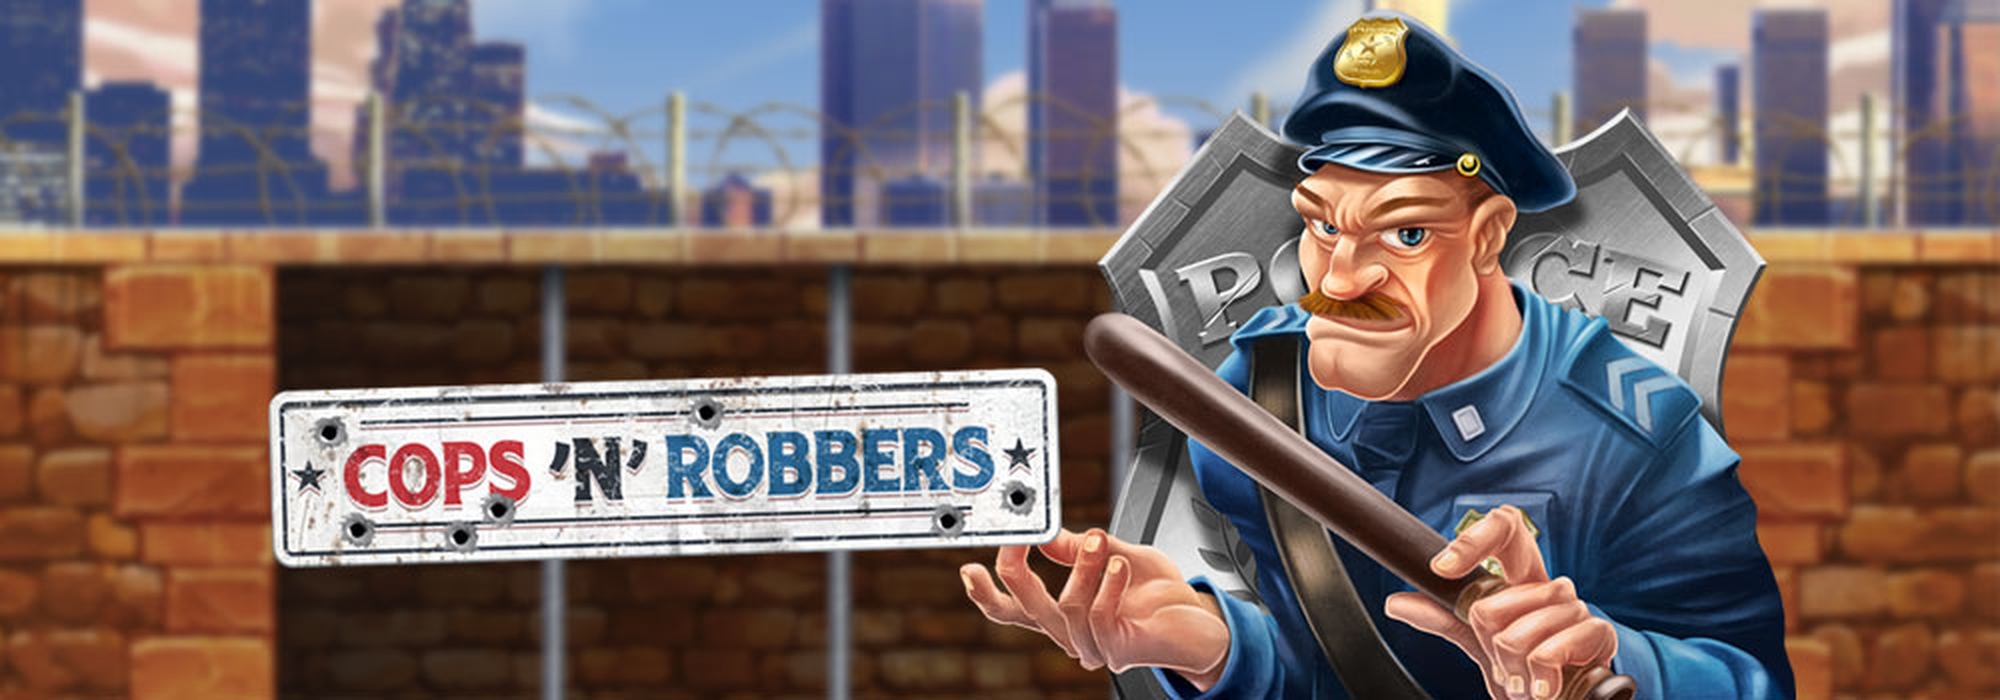 Cops 'N' Robbers 2018